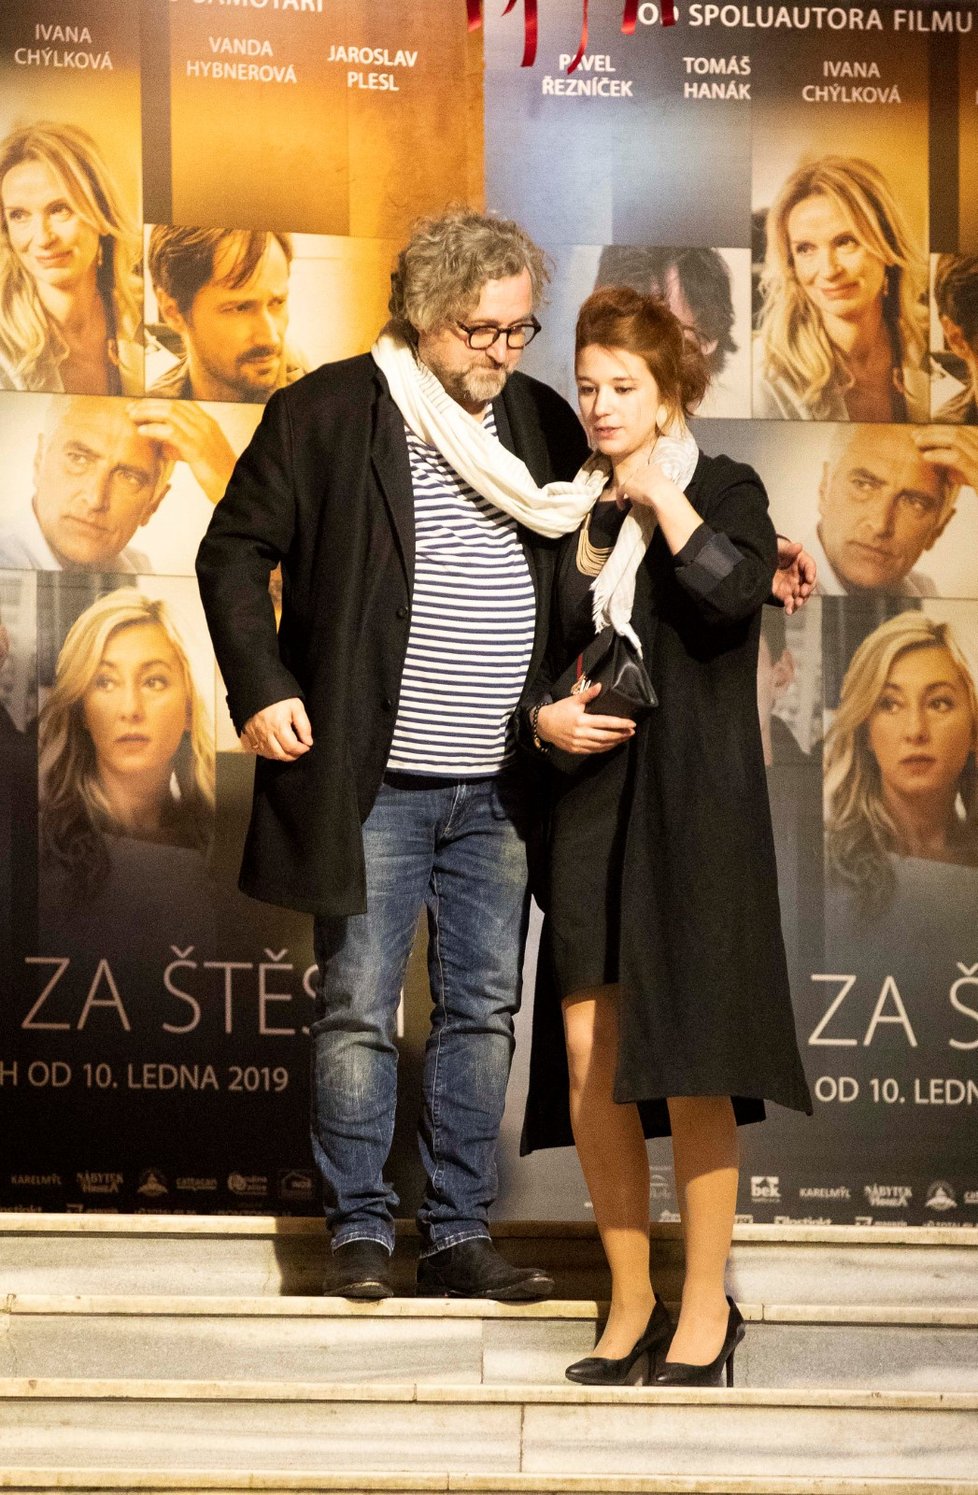 Premiéra filmu Cena za štěstí: Jan Hřebejk s mladou herečkou se do sebe zamotali šálami